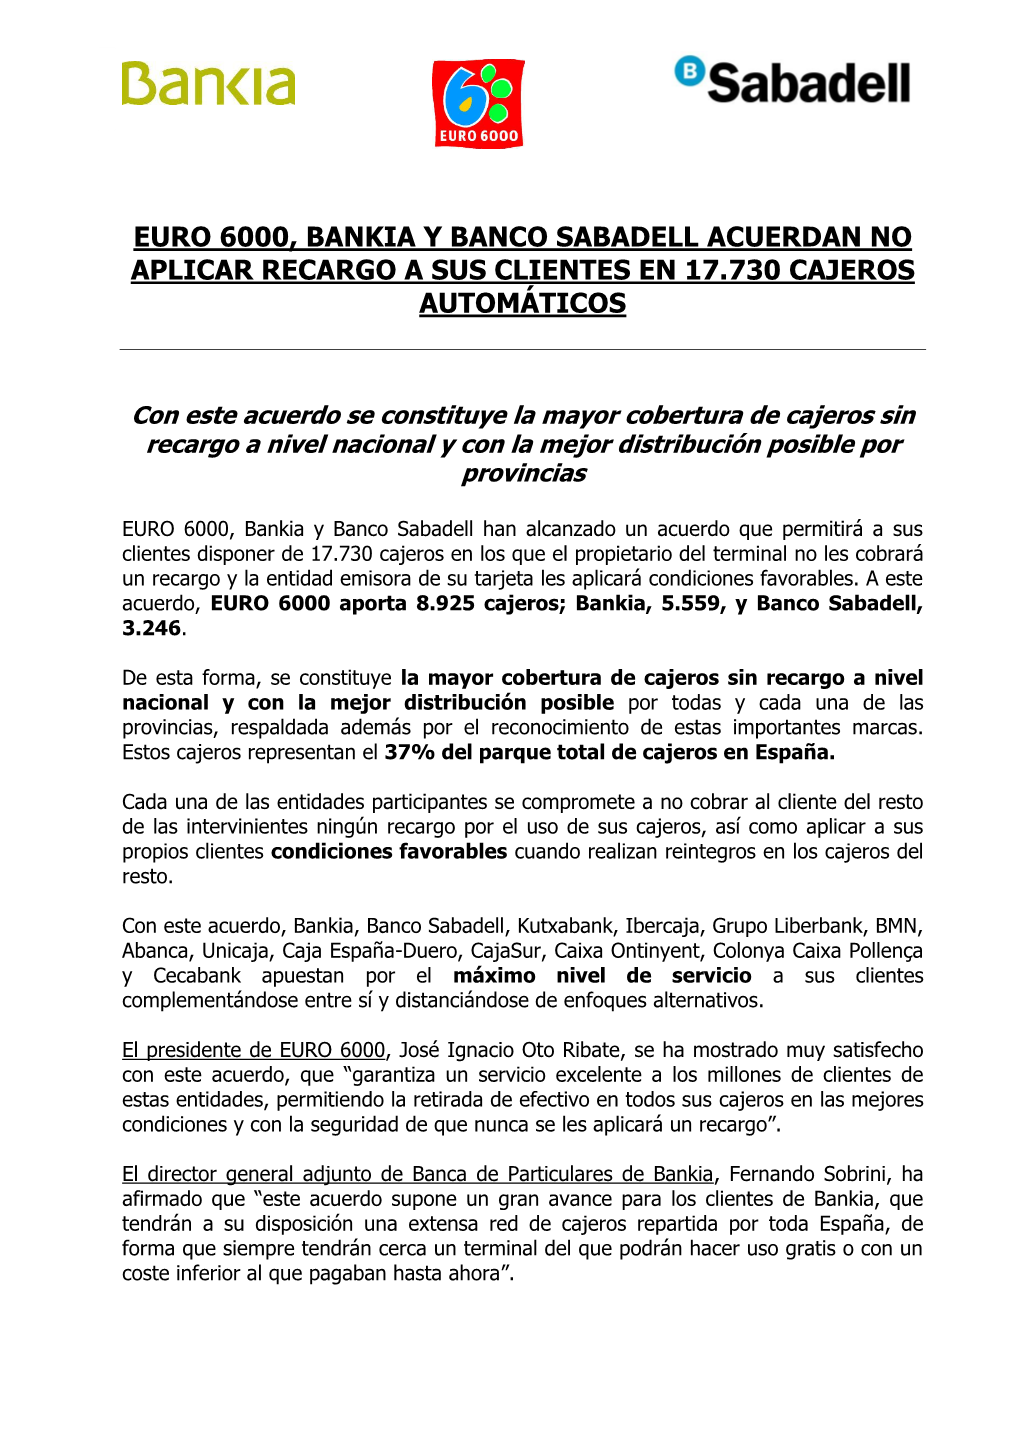 Euro 6000, Bankia Y Banco Sabadell Acuerdan No Aplicar Recargo a Sus Clientes En 17.730 Cajeros Automáticos